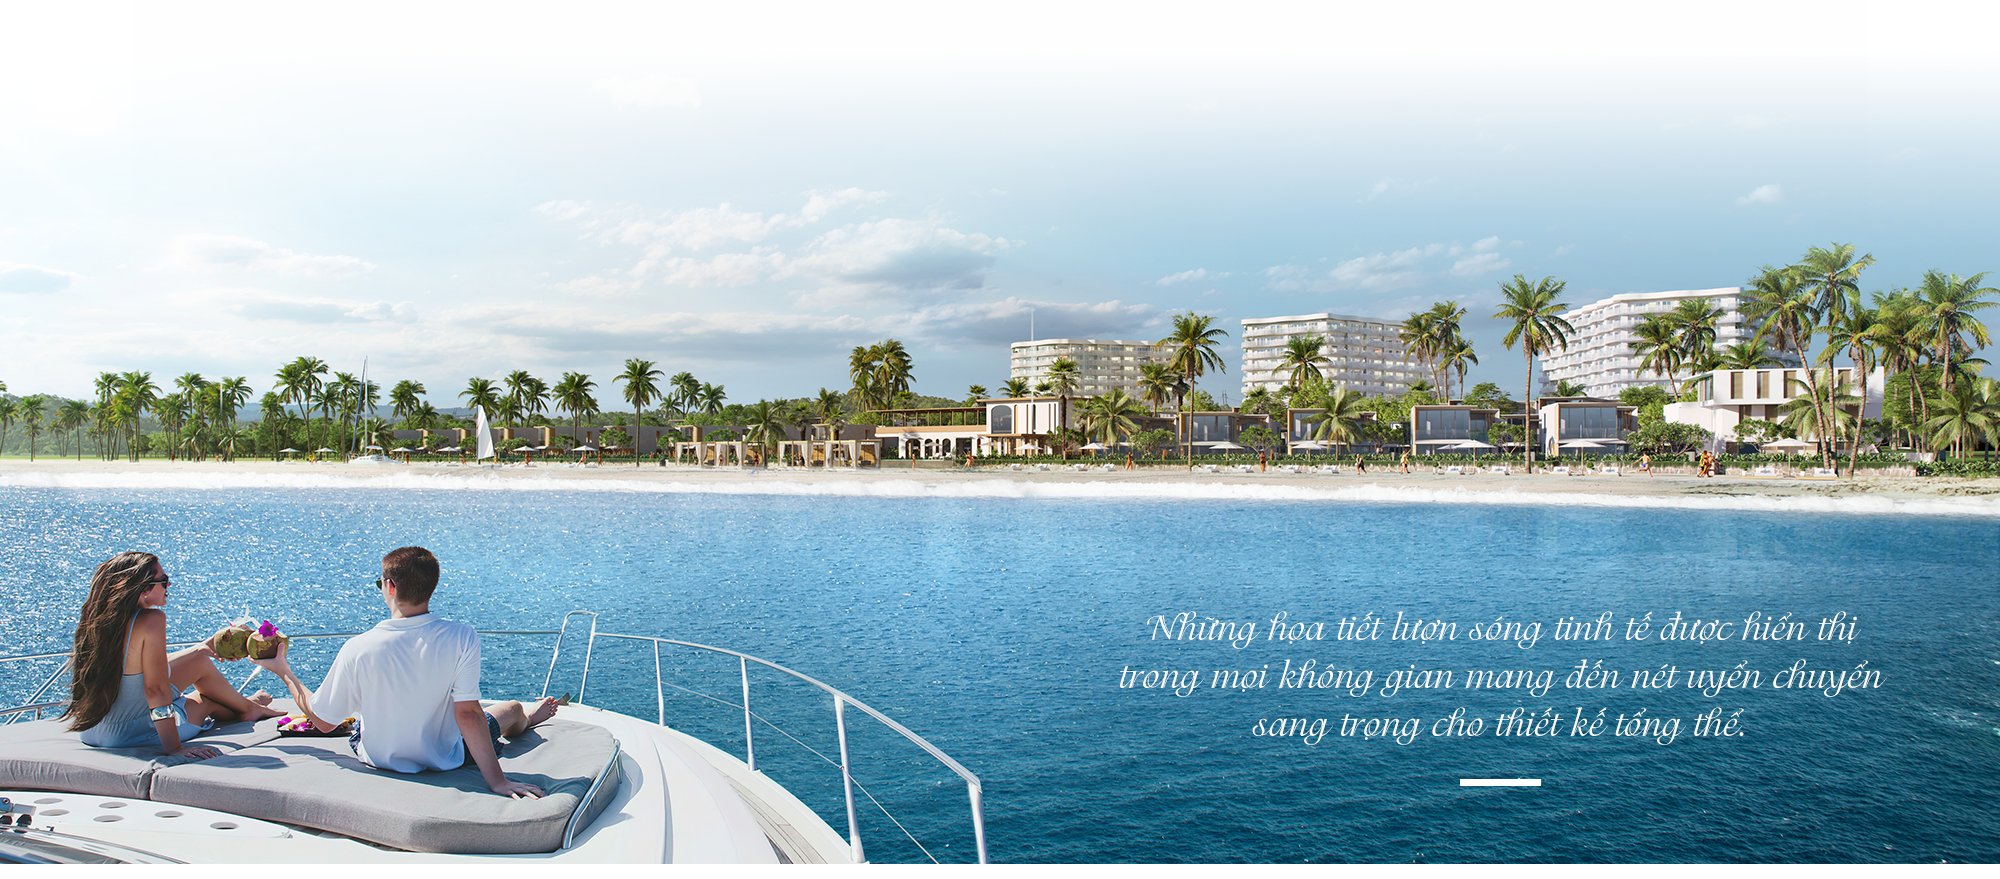 BĐS ven Hội An thắng thế nhờ dòng sản phẩm mới Shantira Beach Resort & Spa - Ảnh 10.